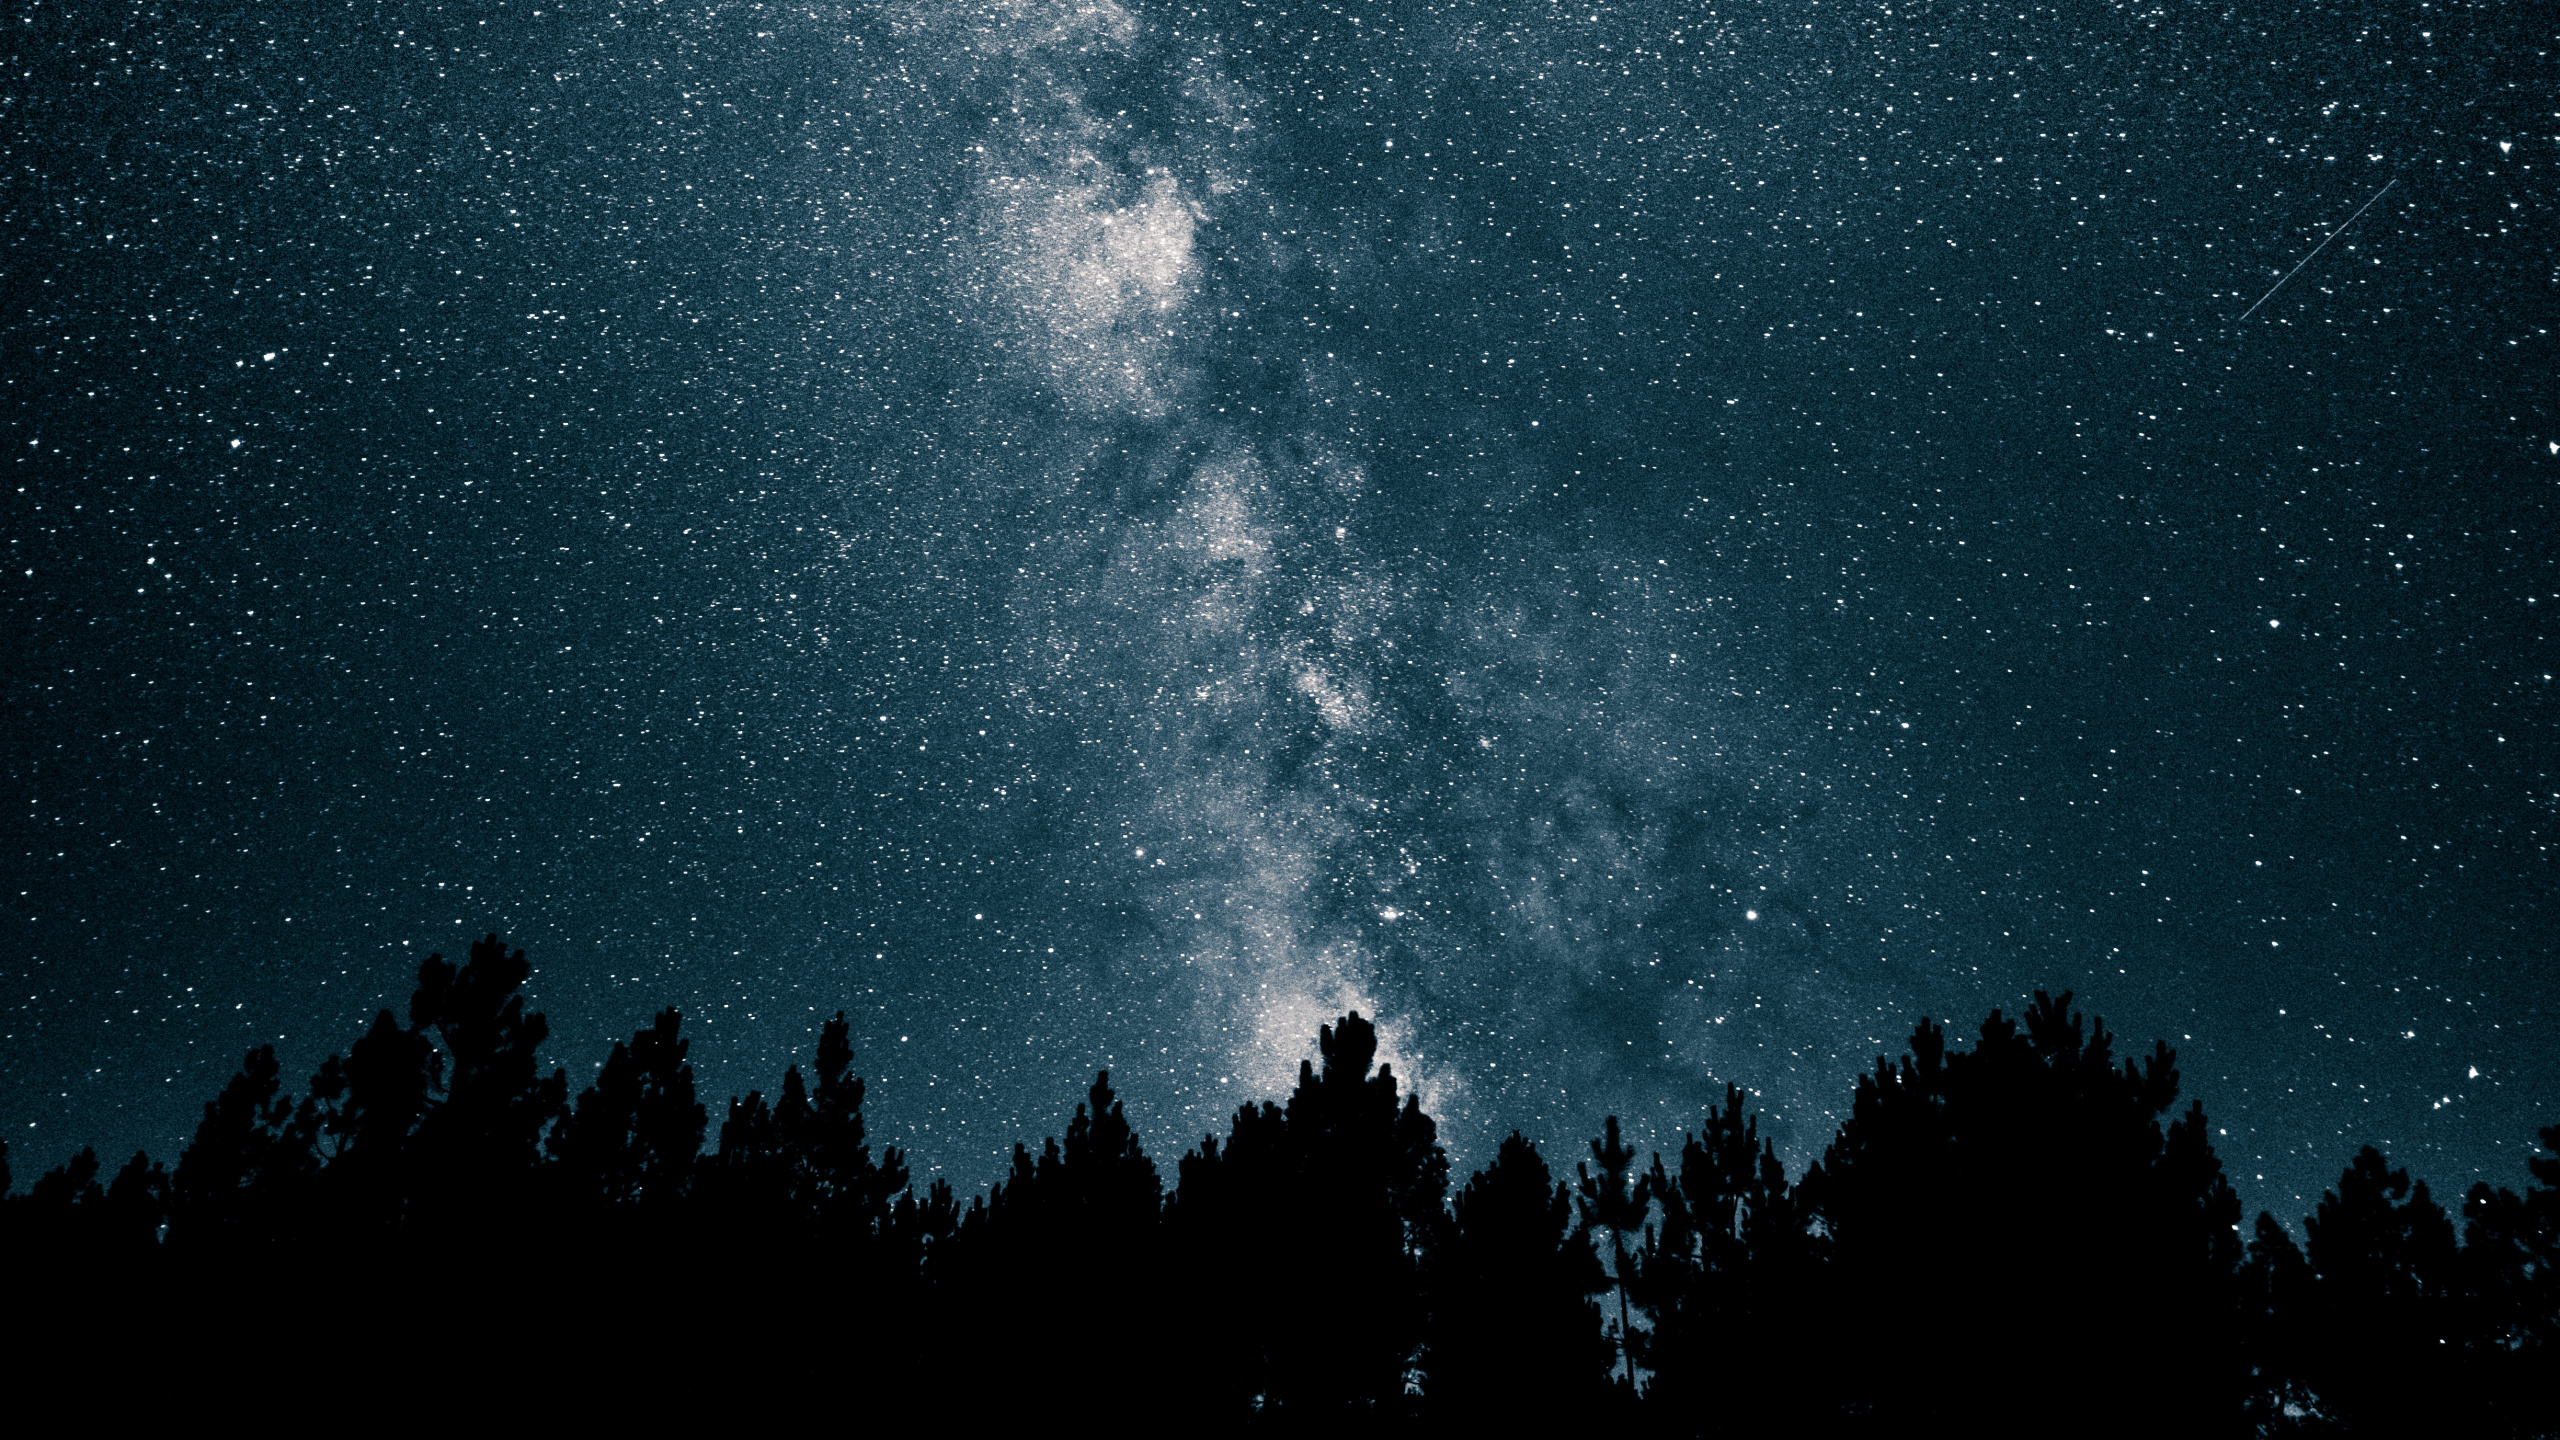 银河系, 明星, 夜晚的天空, 天文学, 天文学对象 壁纸 2560x1440 允许